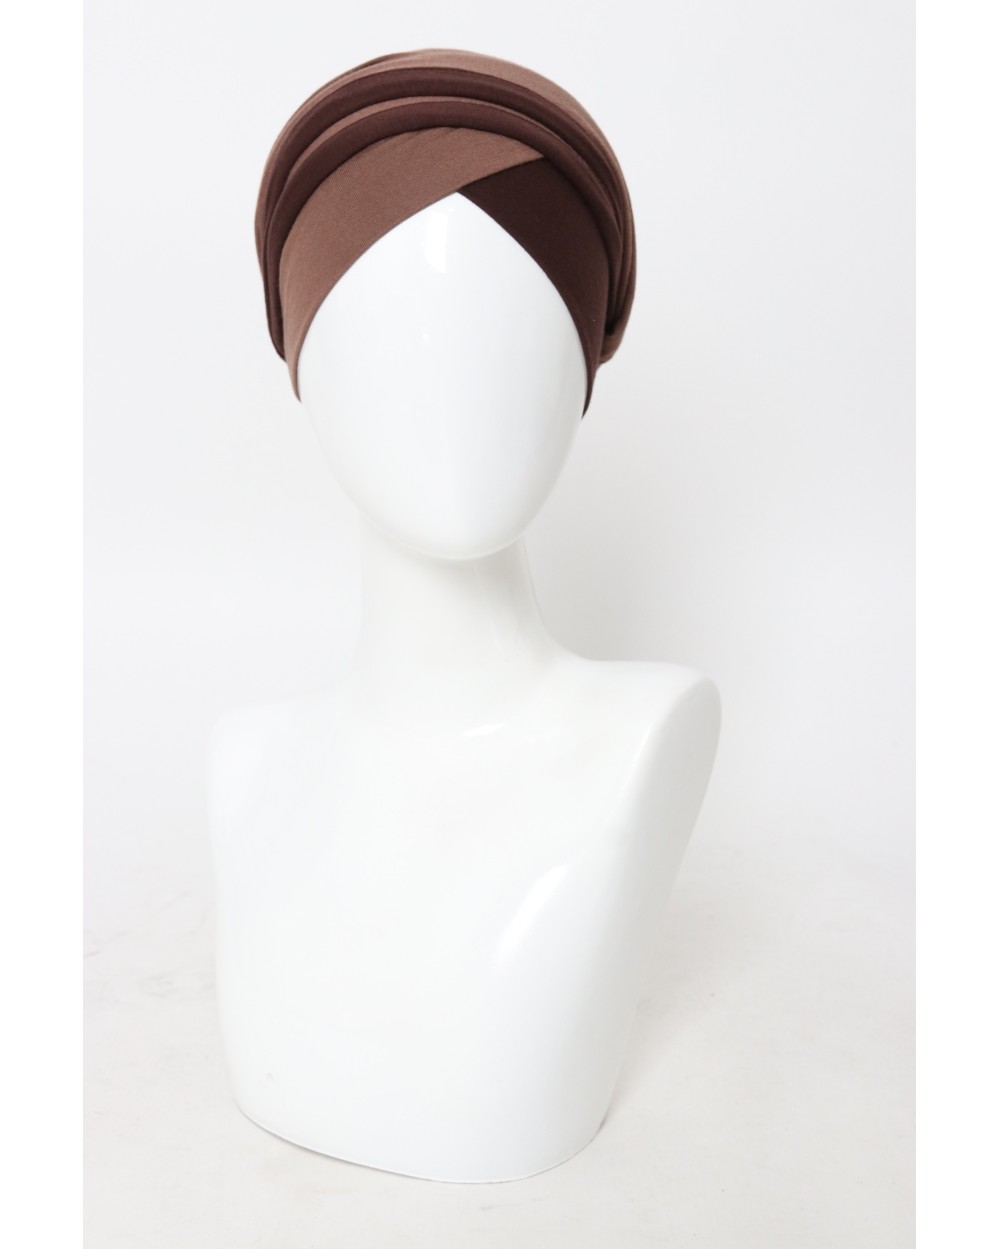 Two-tone women turban